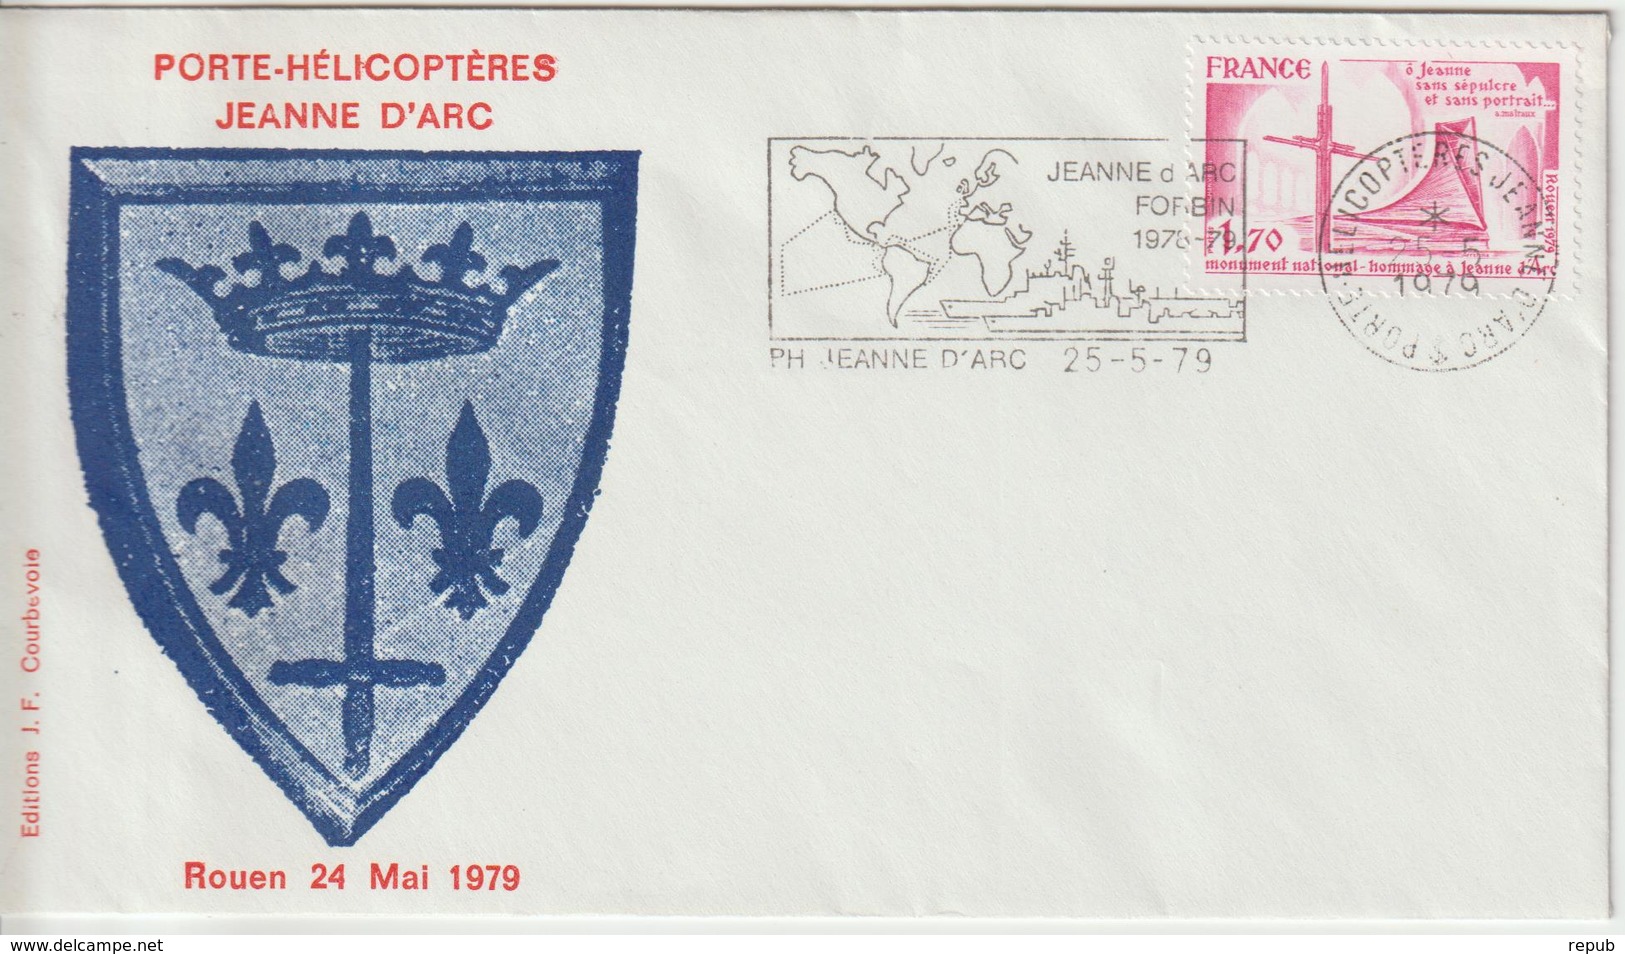 France Porte Hélicoptéres Jeanne D'Arc Avec Timbre église Jeanne D'Arc Rouen 1979 - Seepost